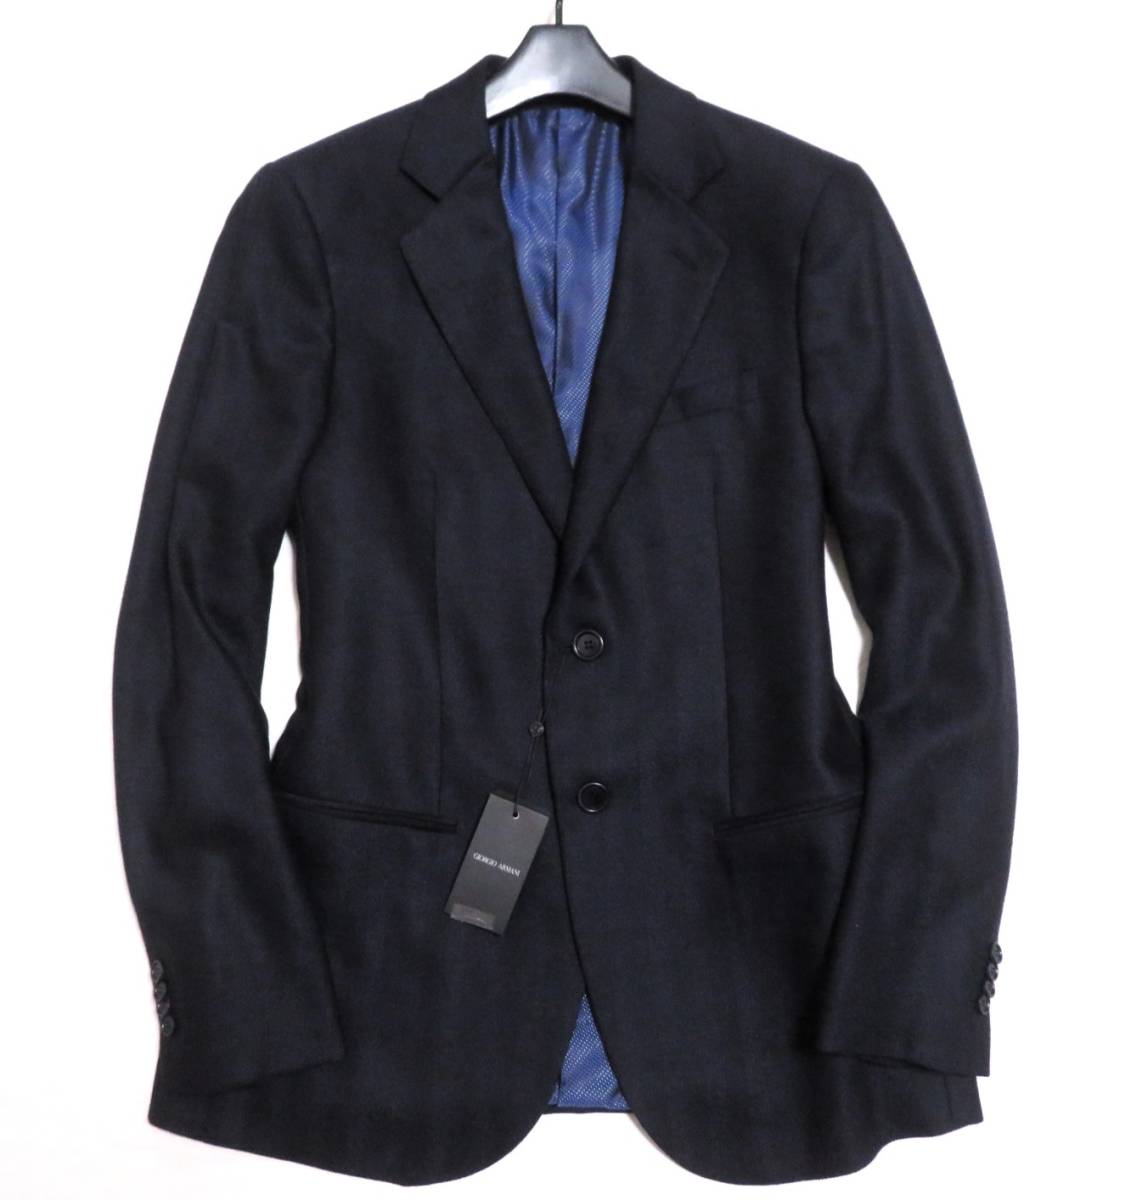  новый товар не использовался сделано в Италии GIORGIOARMANI GEORGEjoru geo Armani темно-синий пятно кашемир & шелк . tailored jacket джентльмен блейзер пик. замечательная вещь 